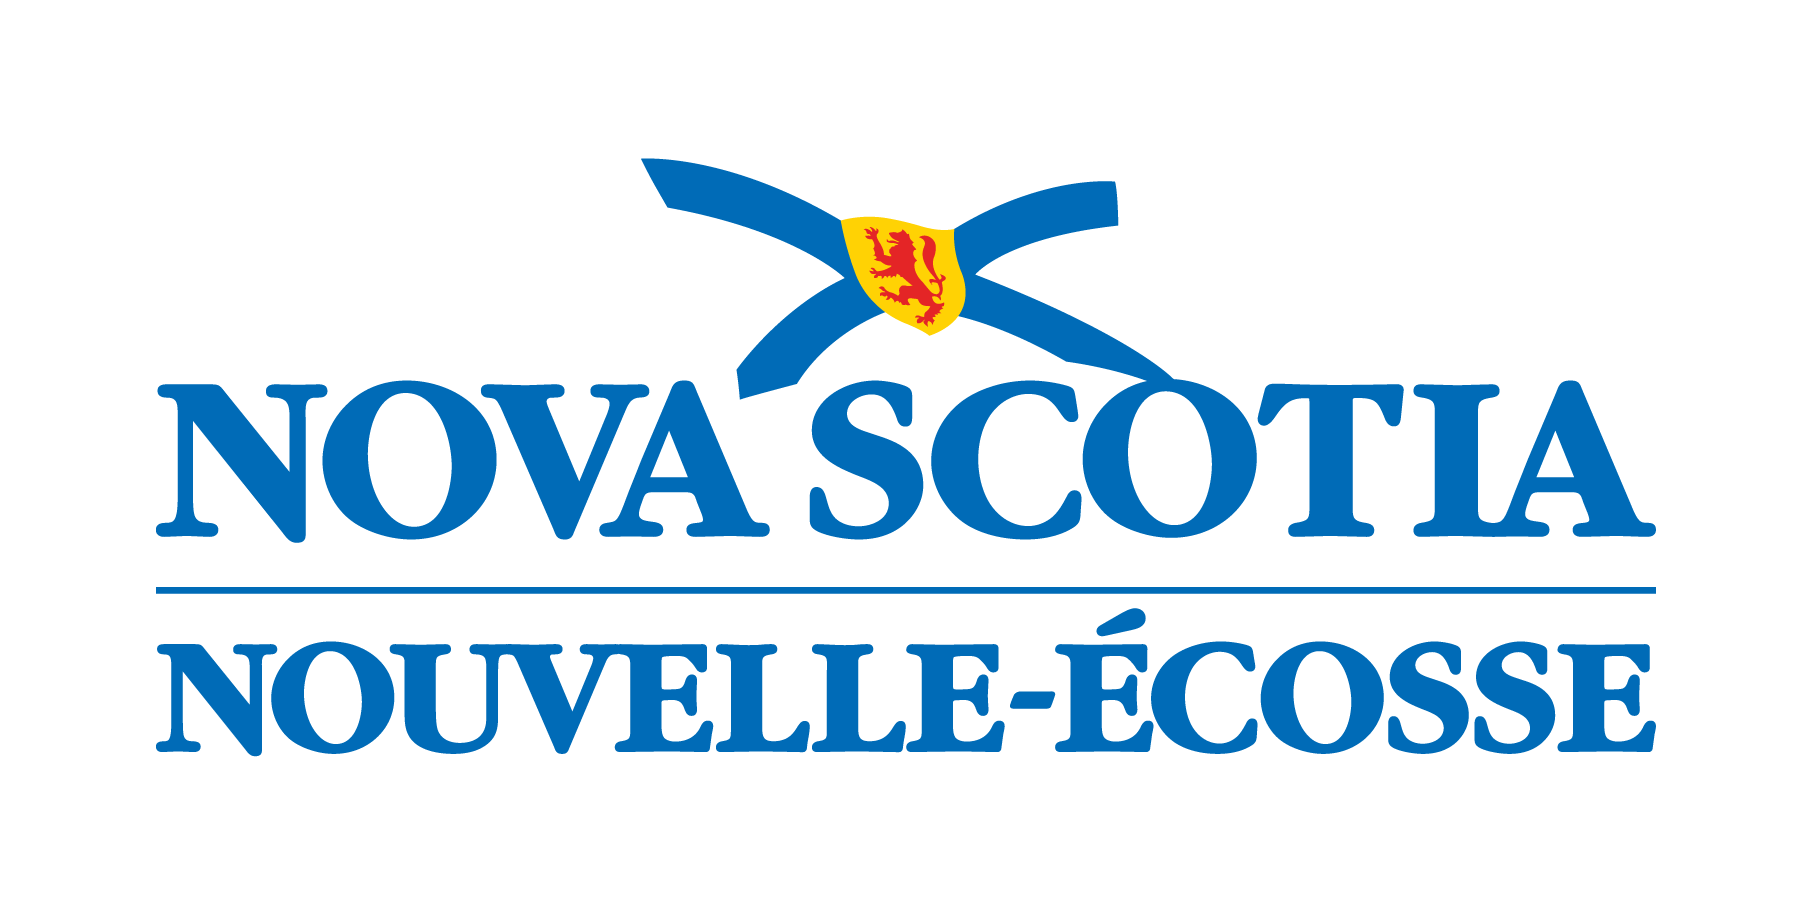 Nova Scotia Nouvelle-Écosse